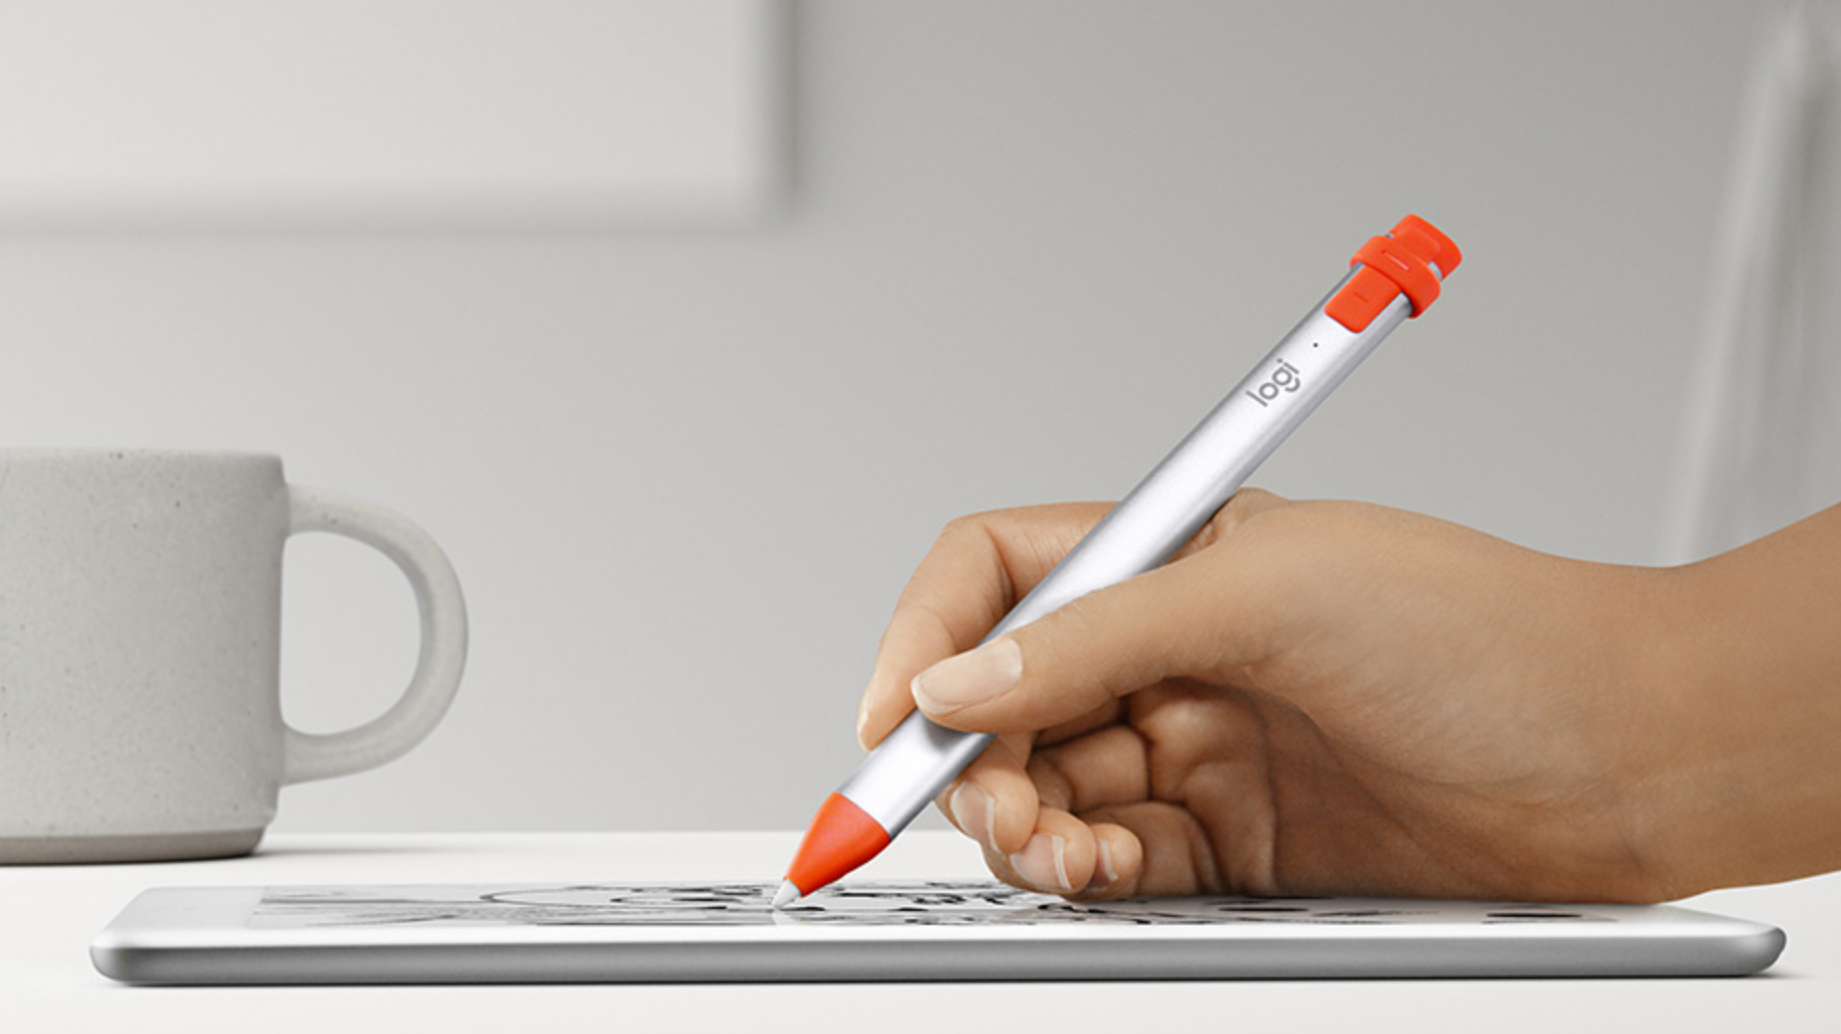 iPad Pro reicht Support für Pencil-Alternative Crayon nach | heise online